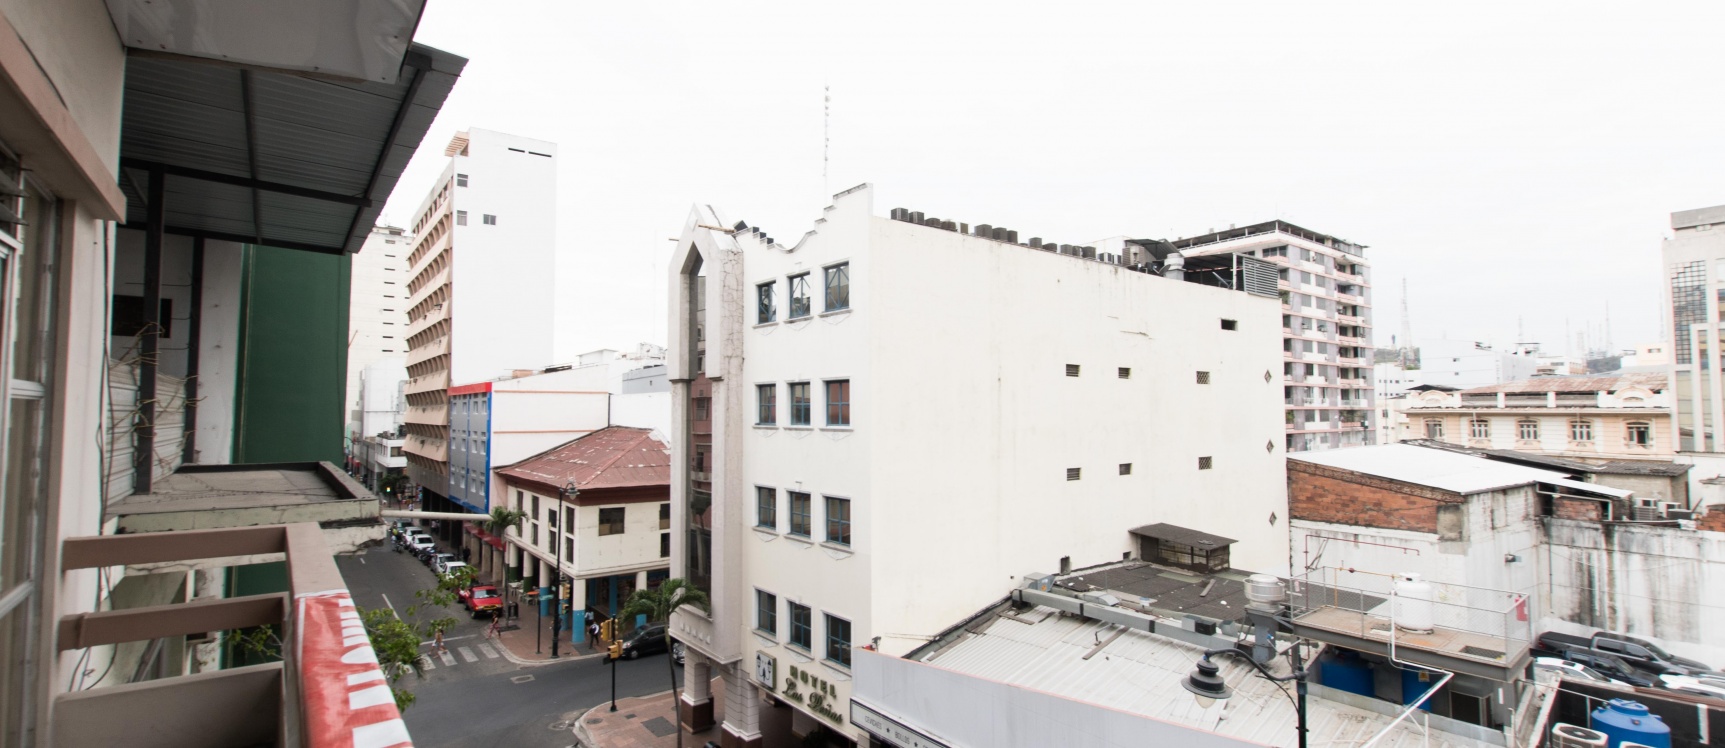 GeoBienes - Departamento en alquiler ubicado en el Centro de Guayaquil - Plusvalia Guayaquil Casas de venta y alquiler Inmobiliaria Ecuador